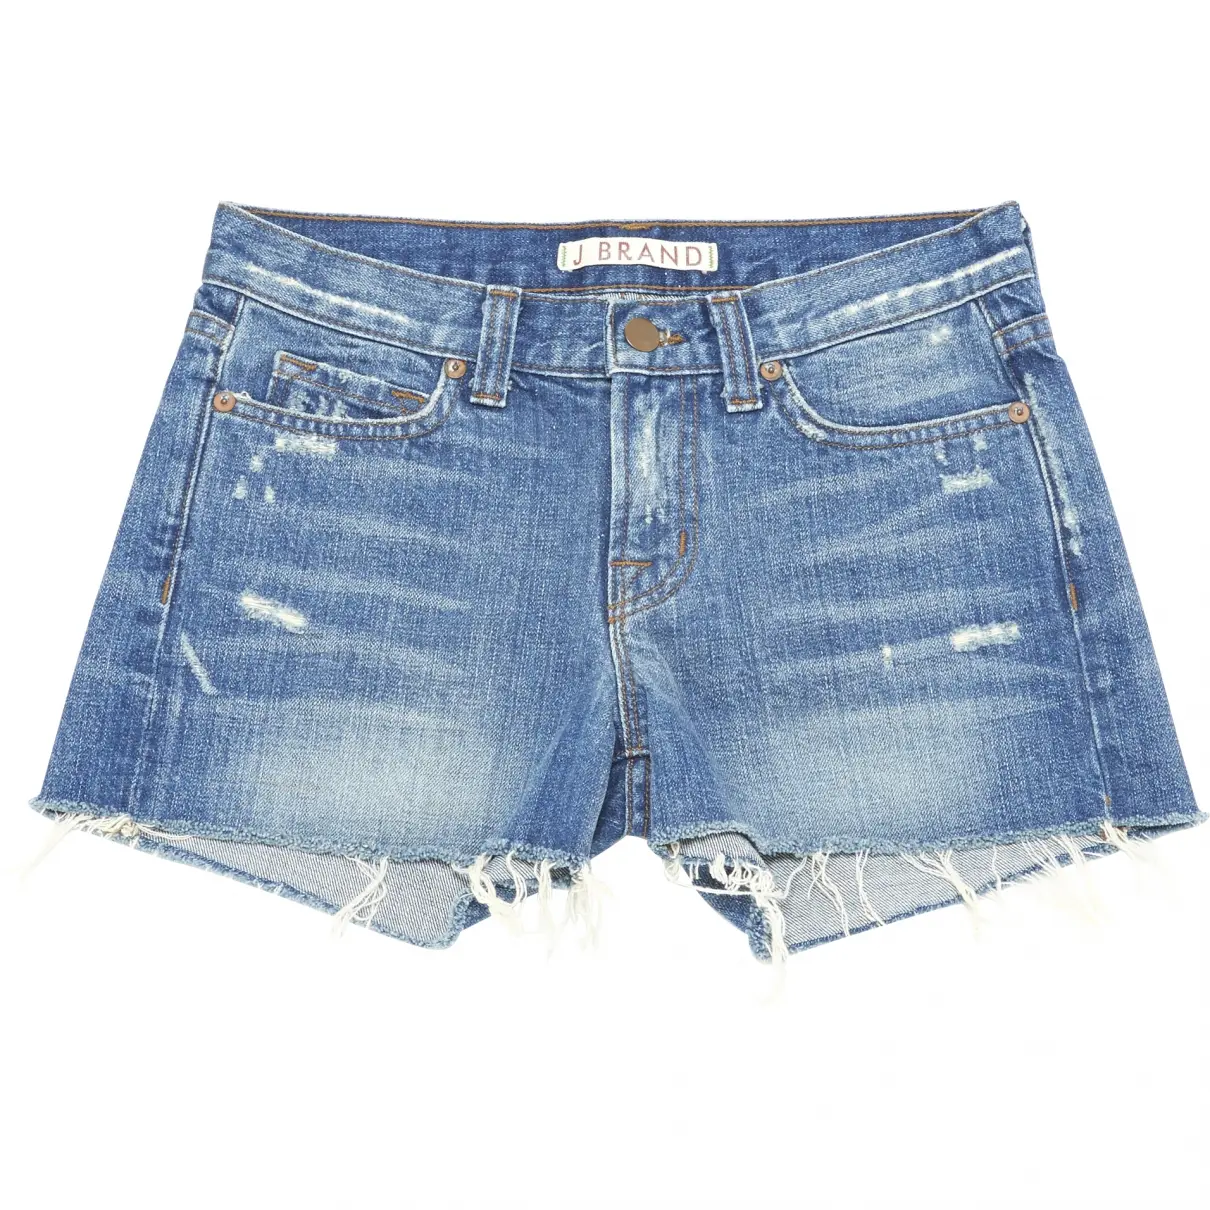 Blue Denim - Jeans Shorts J Brand